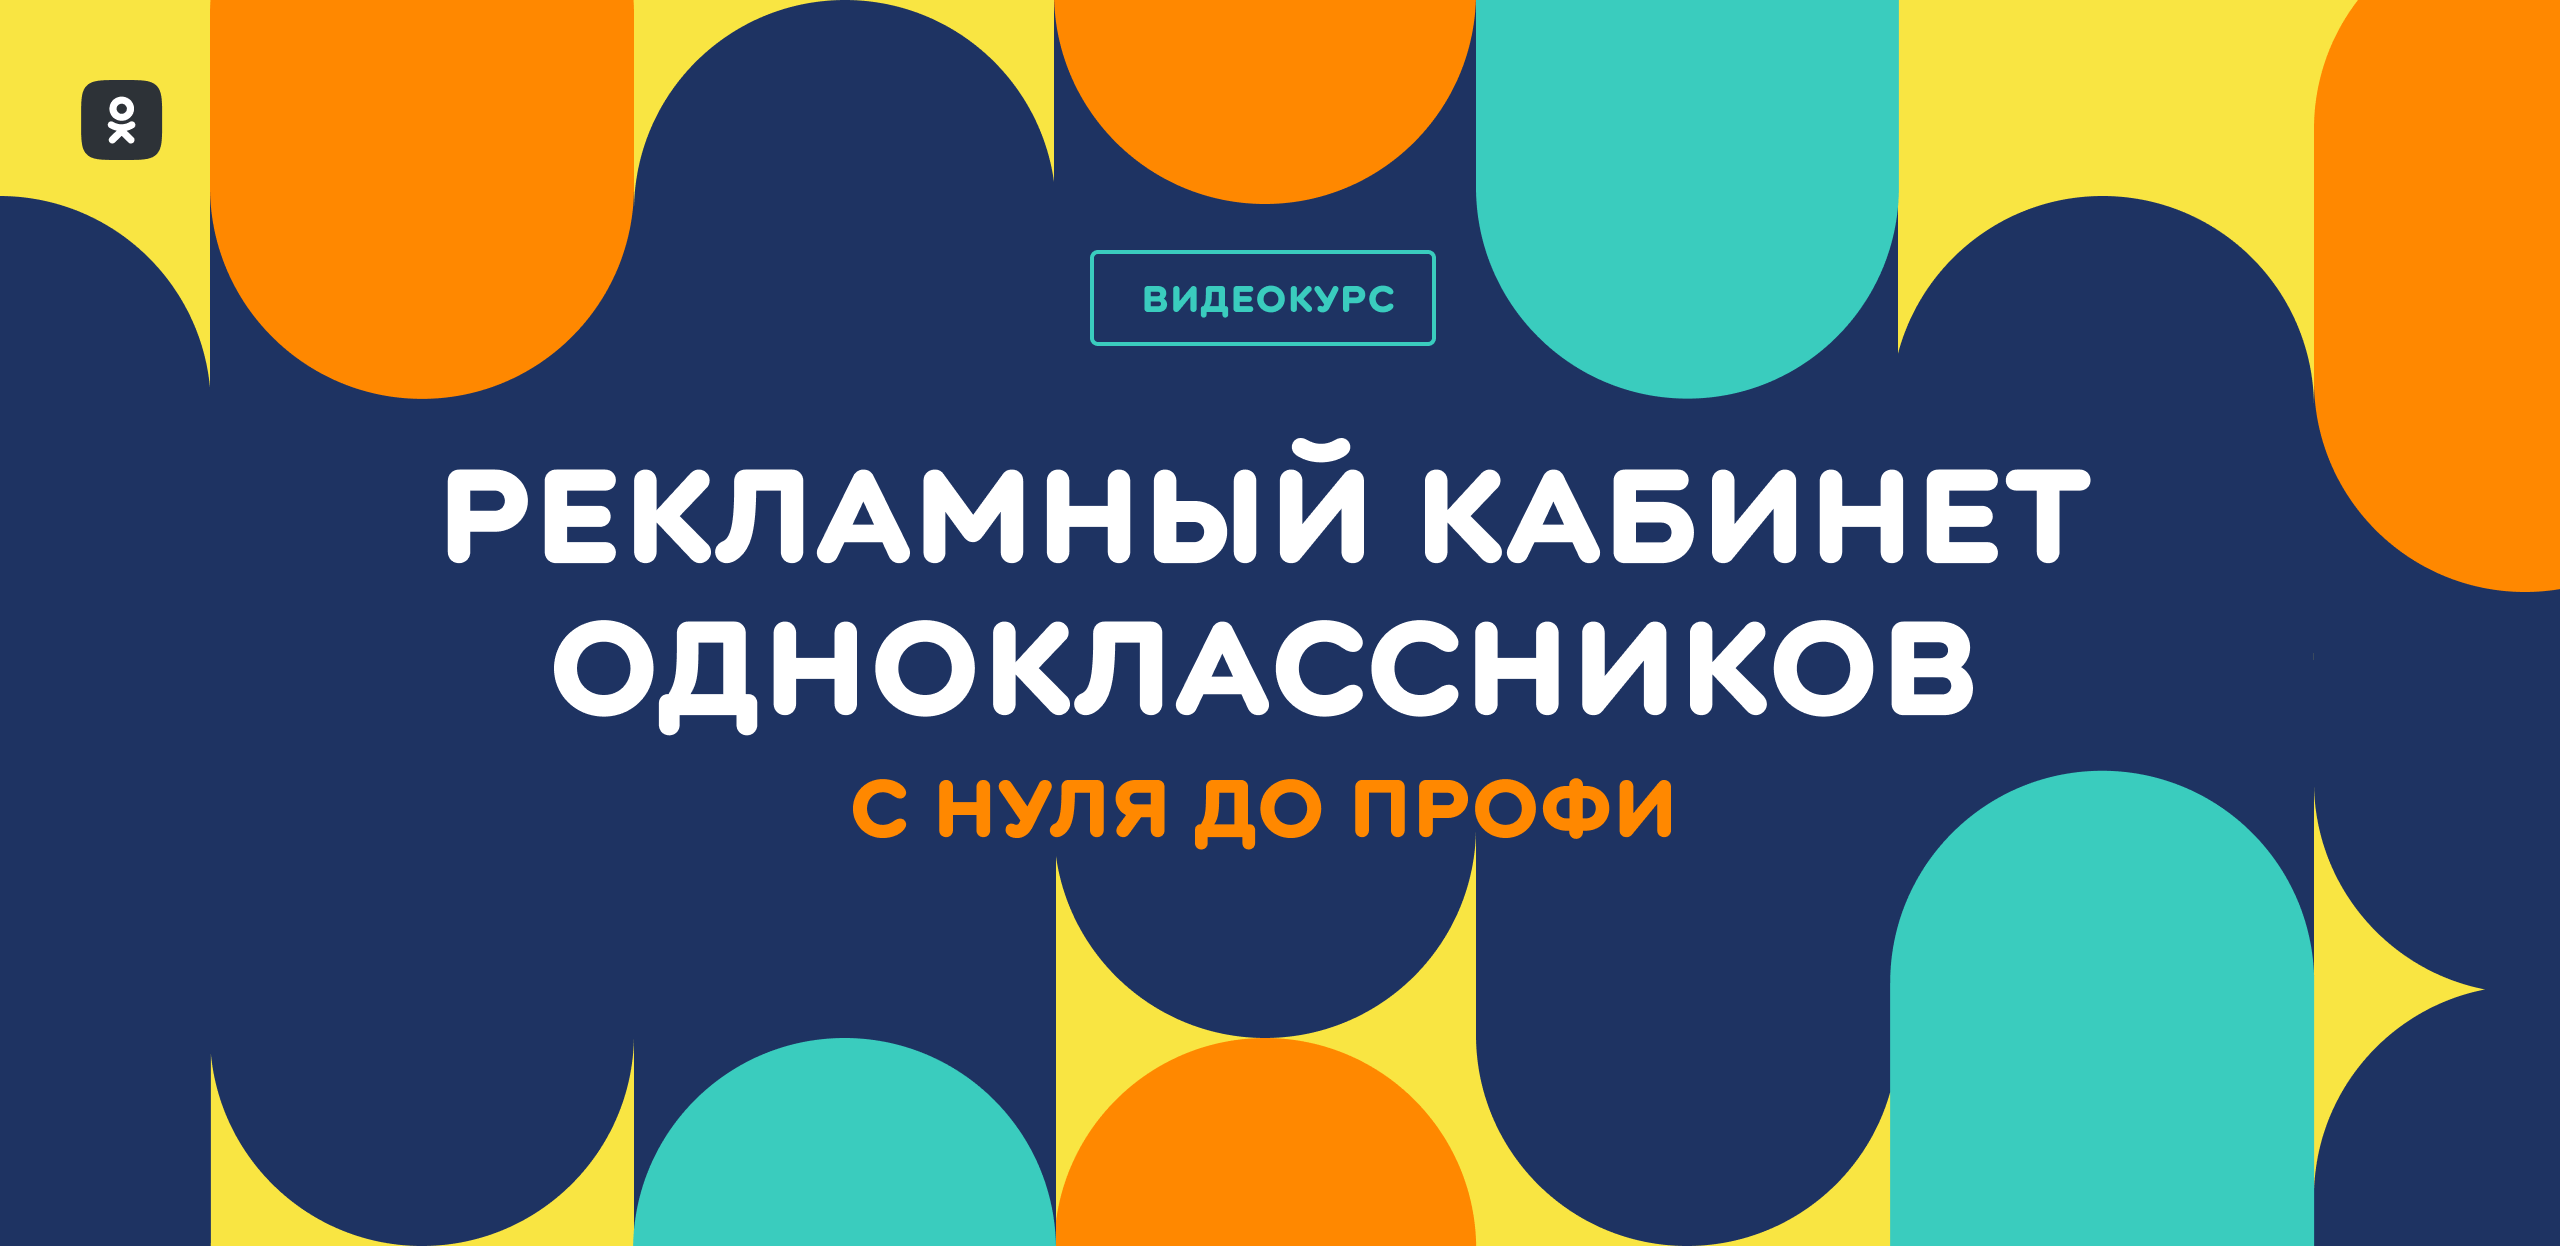 ОК запустили видеокурс «Рекламный кабинет Одноклассников: с нуля до профи» для авторов и бизнеса